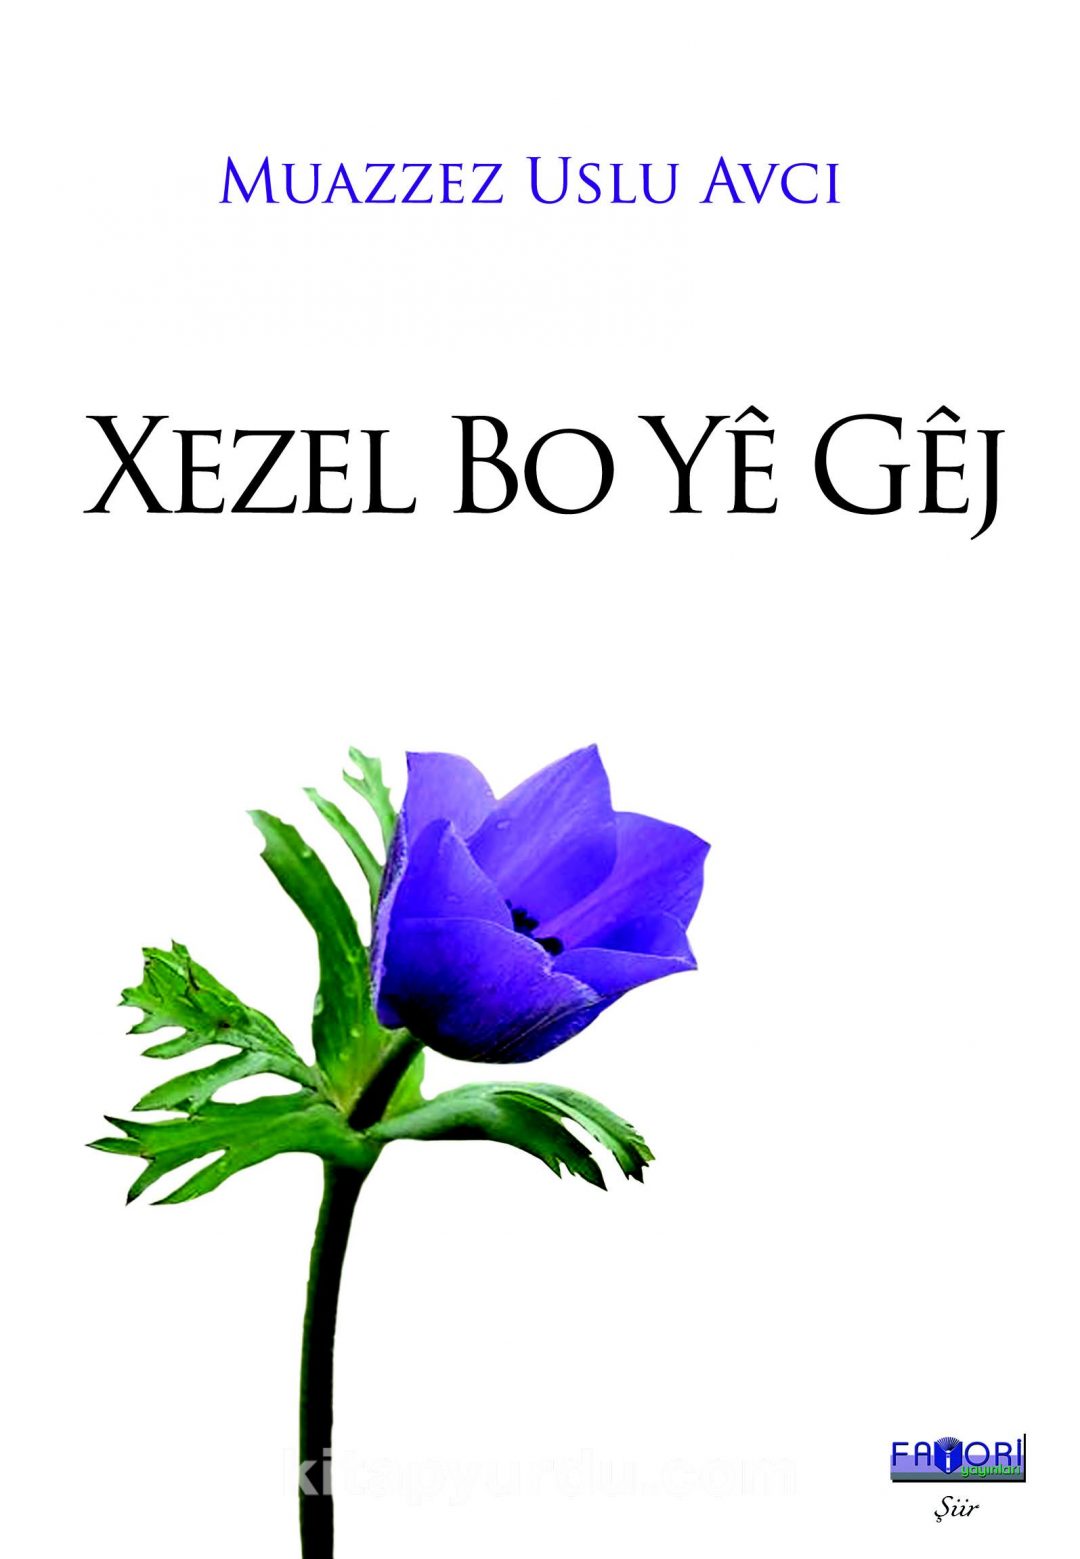 Xezel Bo Ye Gej